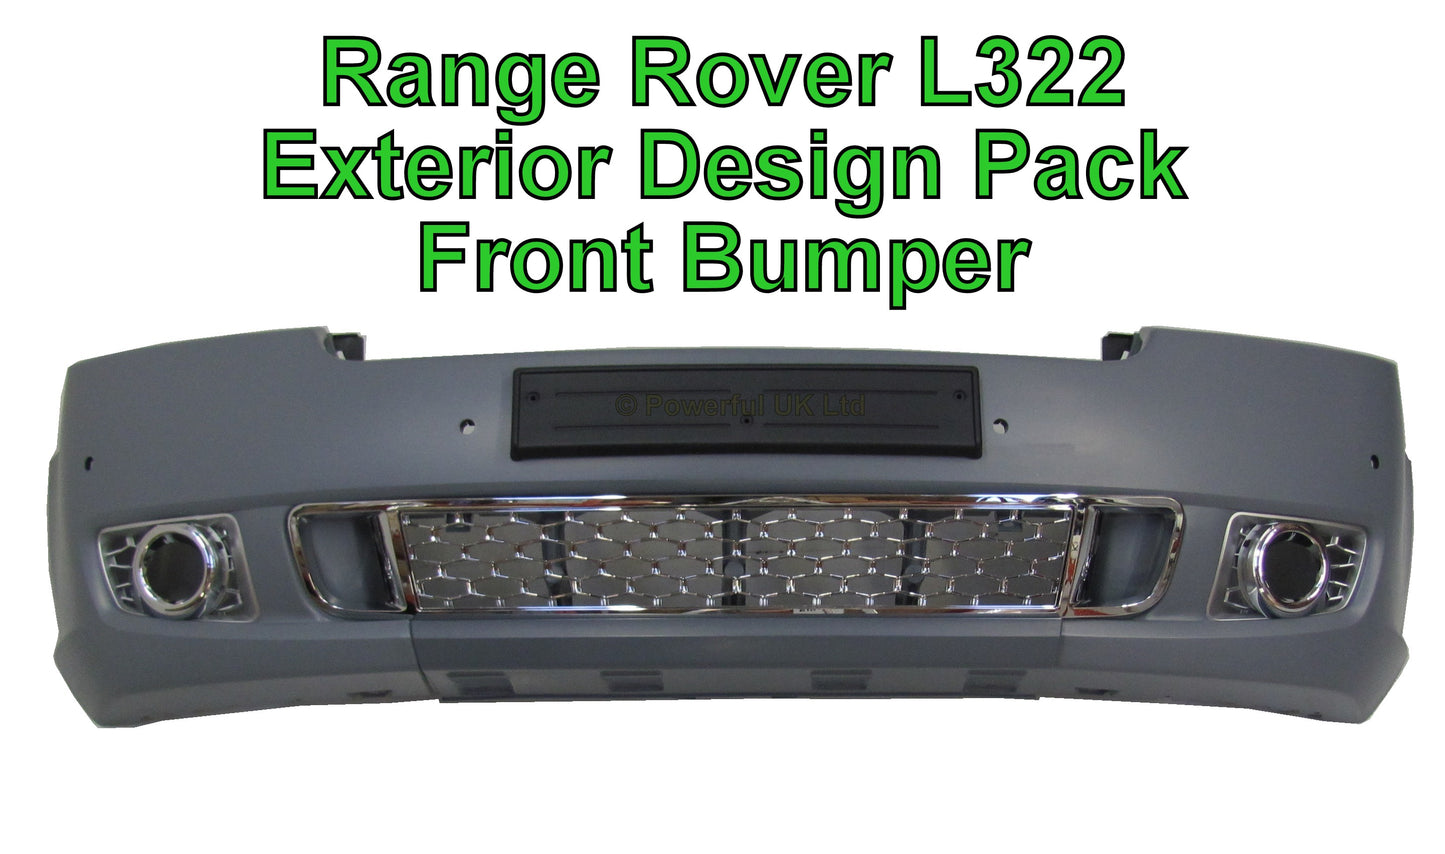 "Exterior Design Pack" Front Bumper for Range Rover L322- Aftermarket